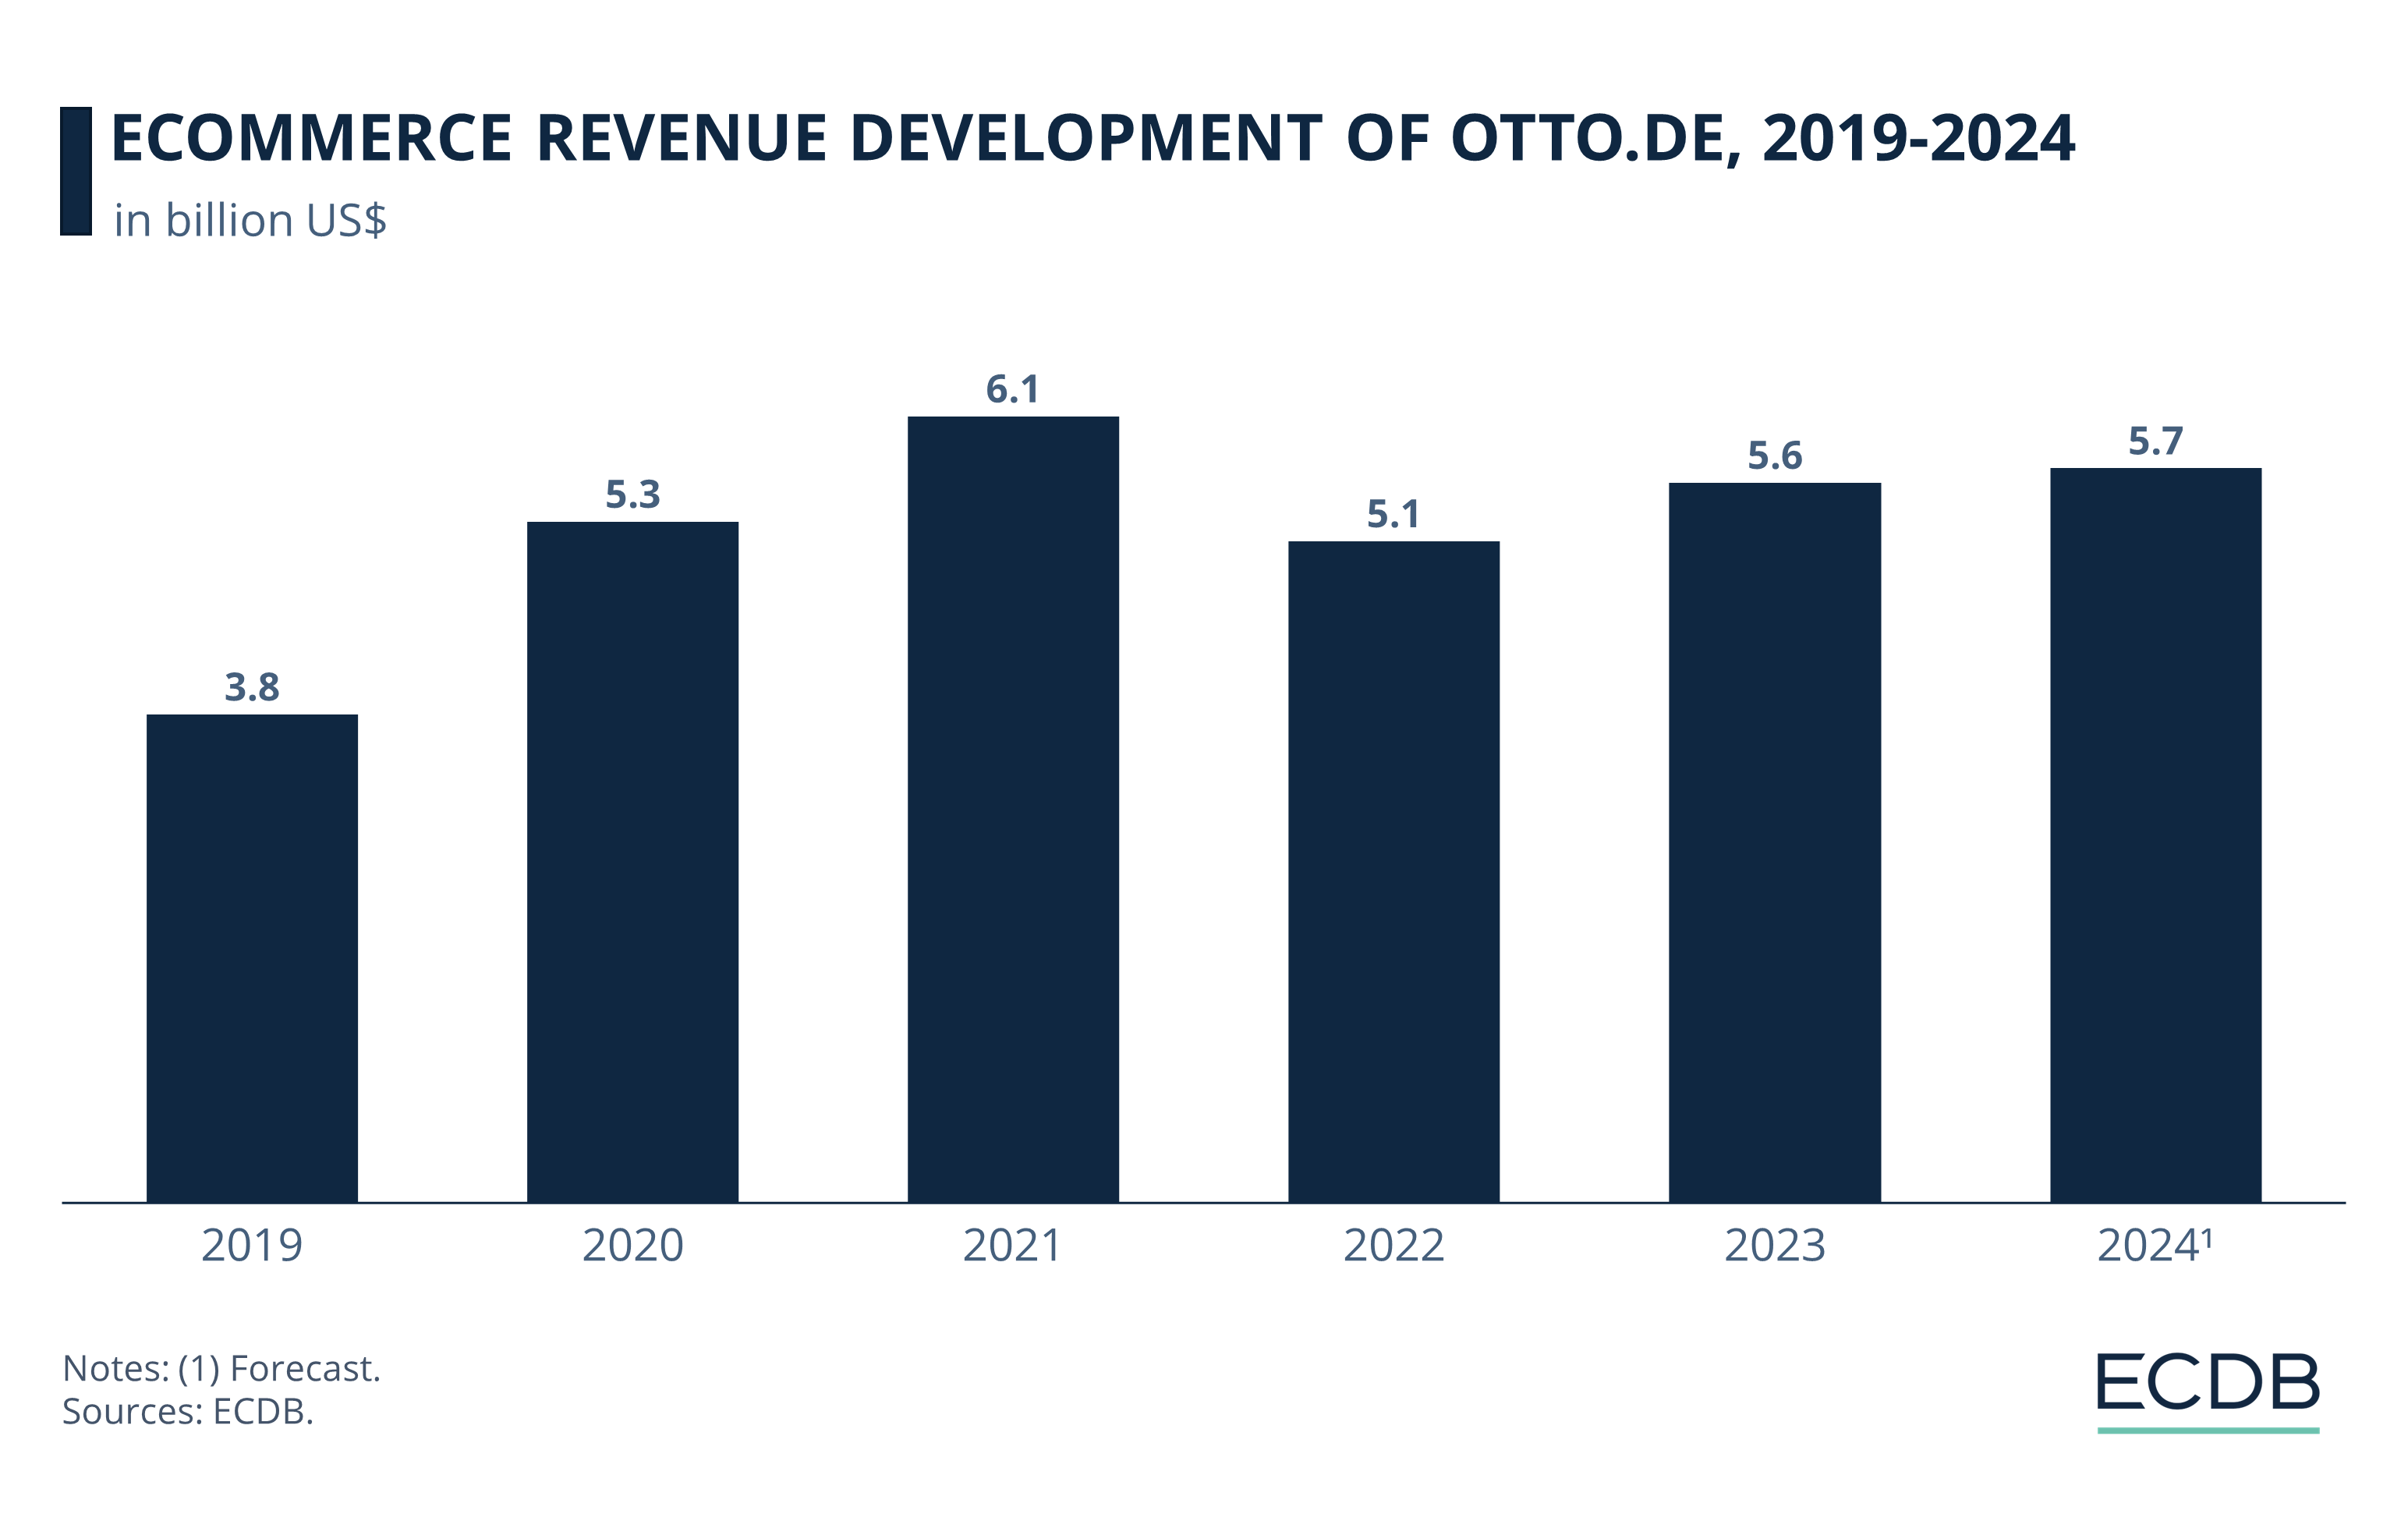 eCommerce Revenue Development of Otto.de, 2019-2024